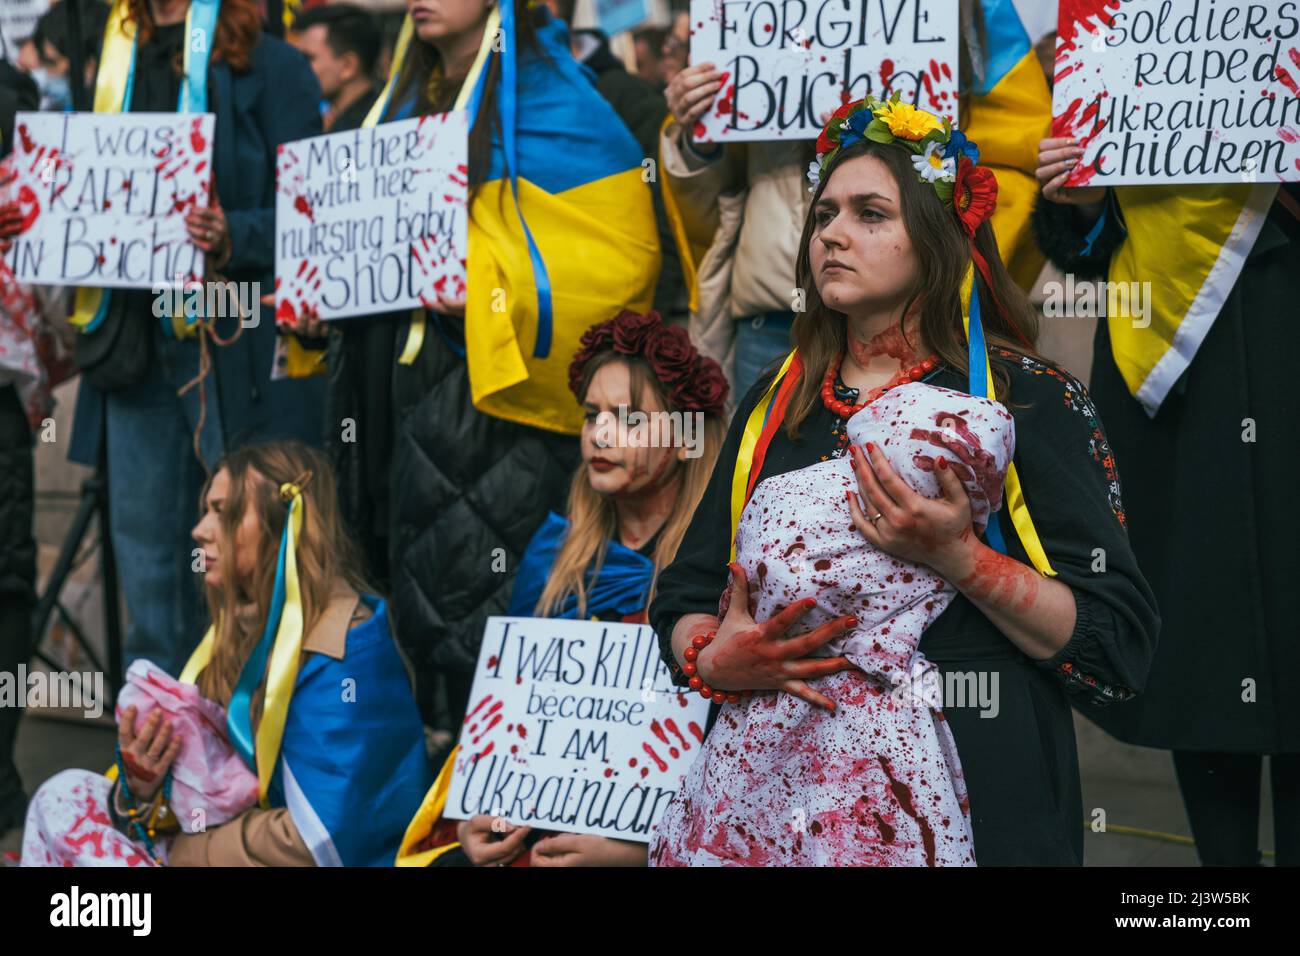 Starke ukrainische Frau protestiert gegen russische Invasion und Völkermord in Bucha. Ukrainische Flaggen gegen den Krieg. Umgeben von Frauen, die für den Frieden kämpfen Stockfoto